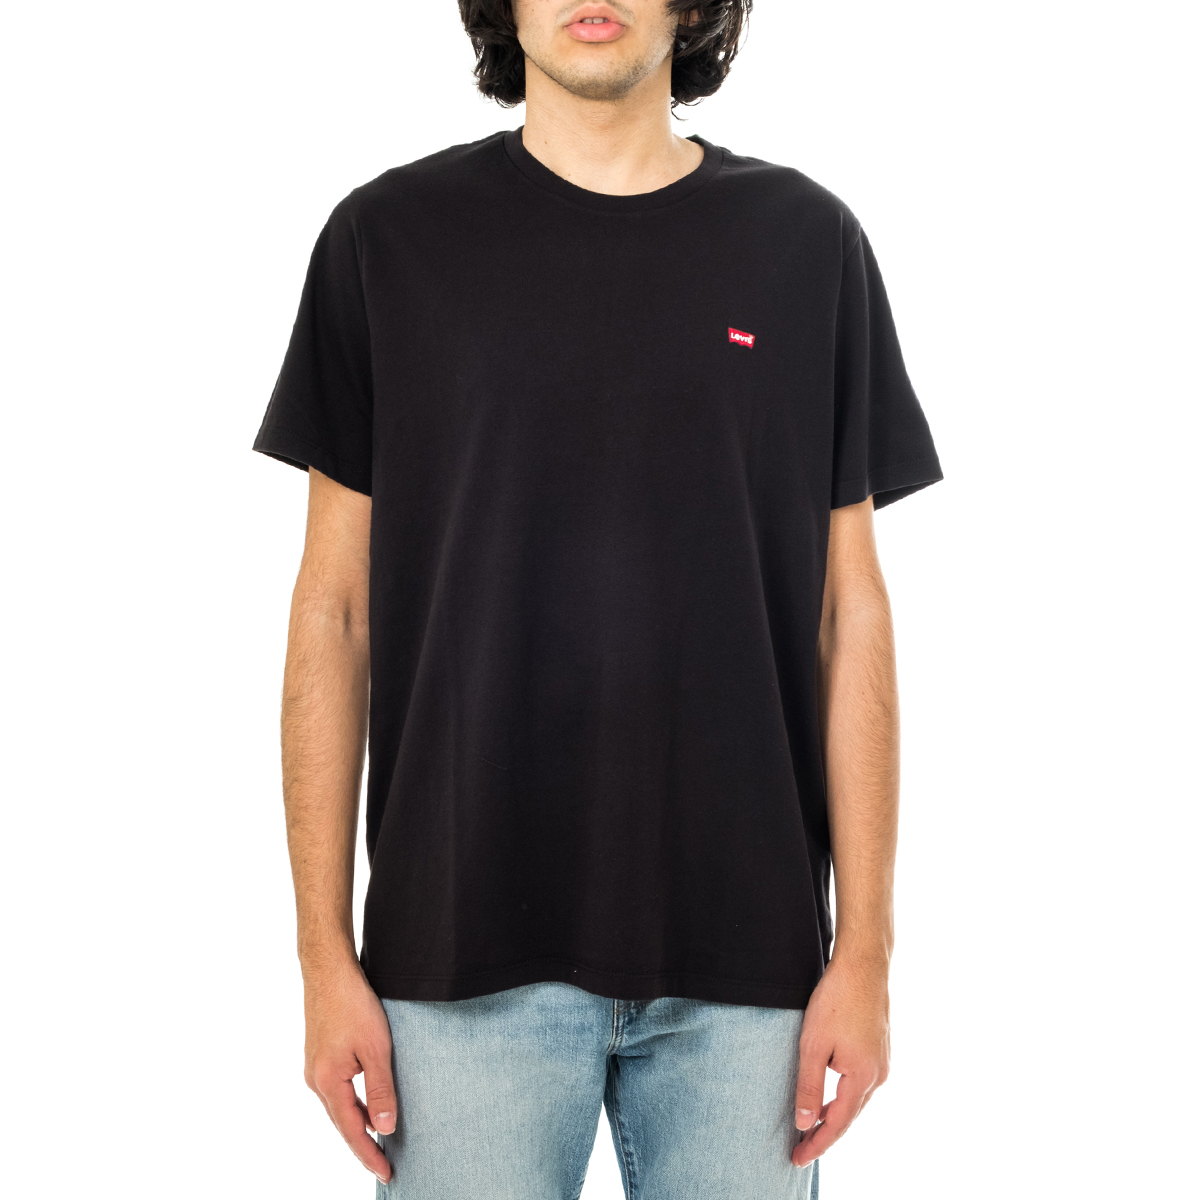 gemiddelde Pessimist Evolueren T-shirt Man Levi's Ss Original Hm Tee Mineral Black 56605-0009 | eBay